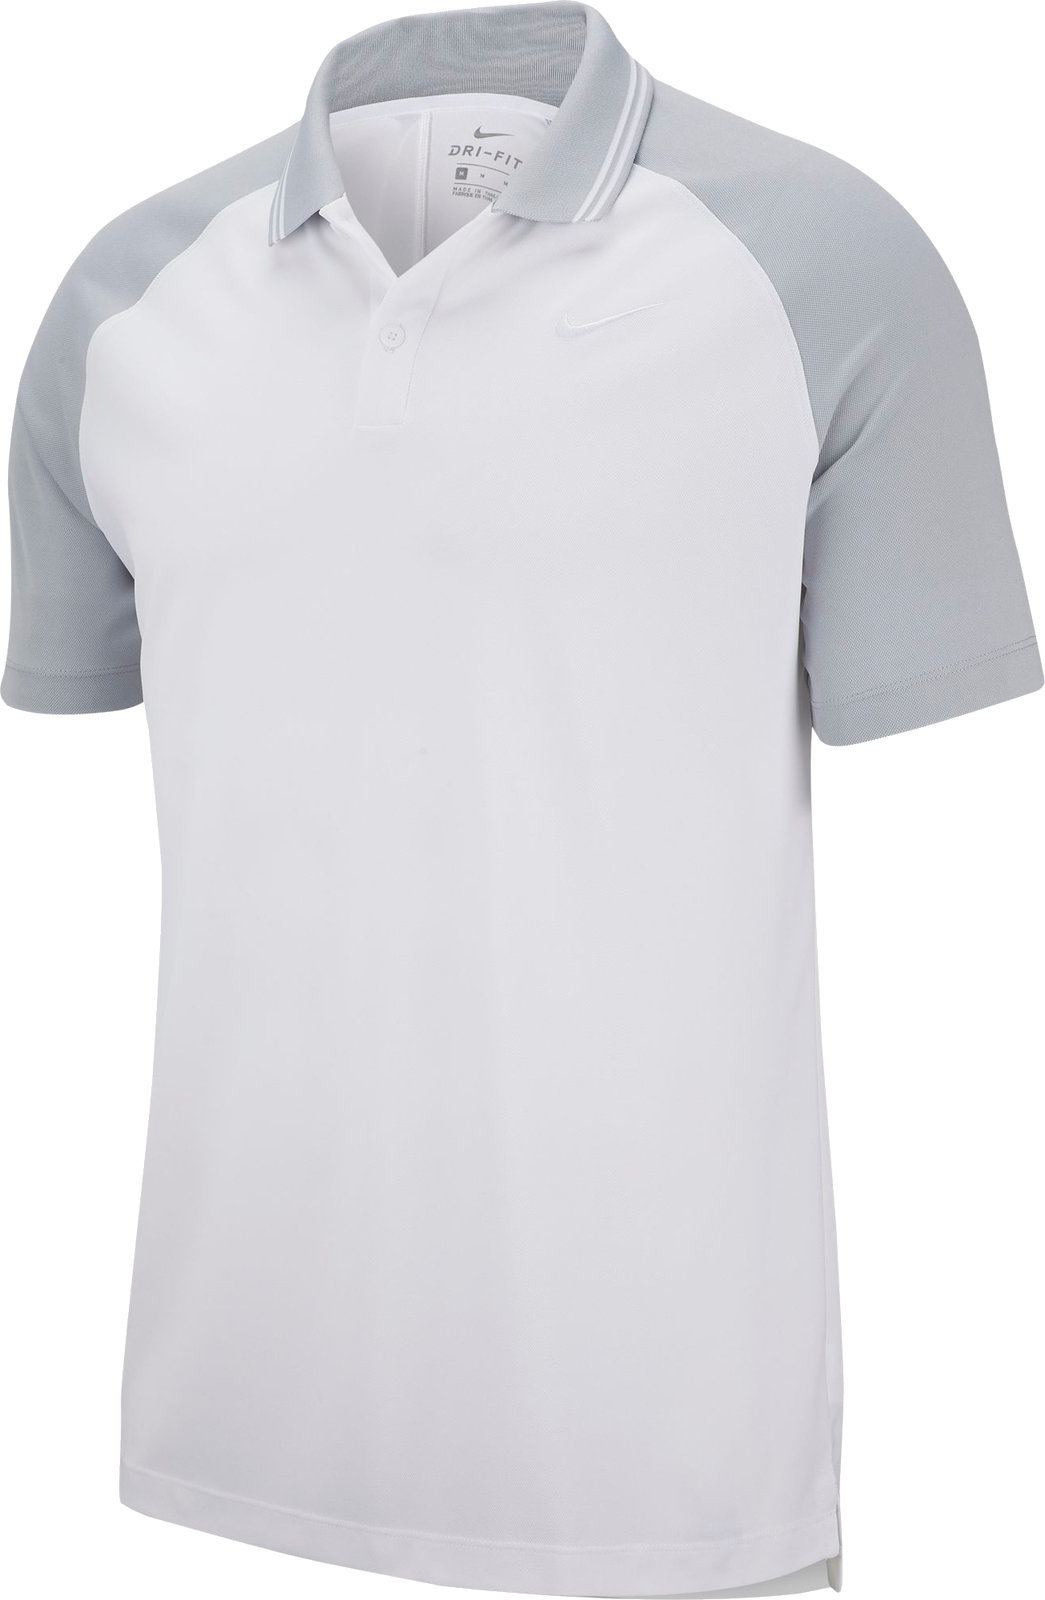 Koszulka Polo Nike Dry Essential Tipped Koszulka Polo Do Golfa Męska White/Wolf Grey L